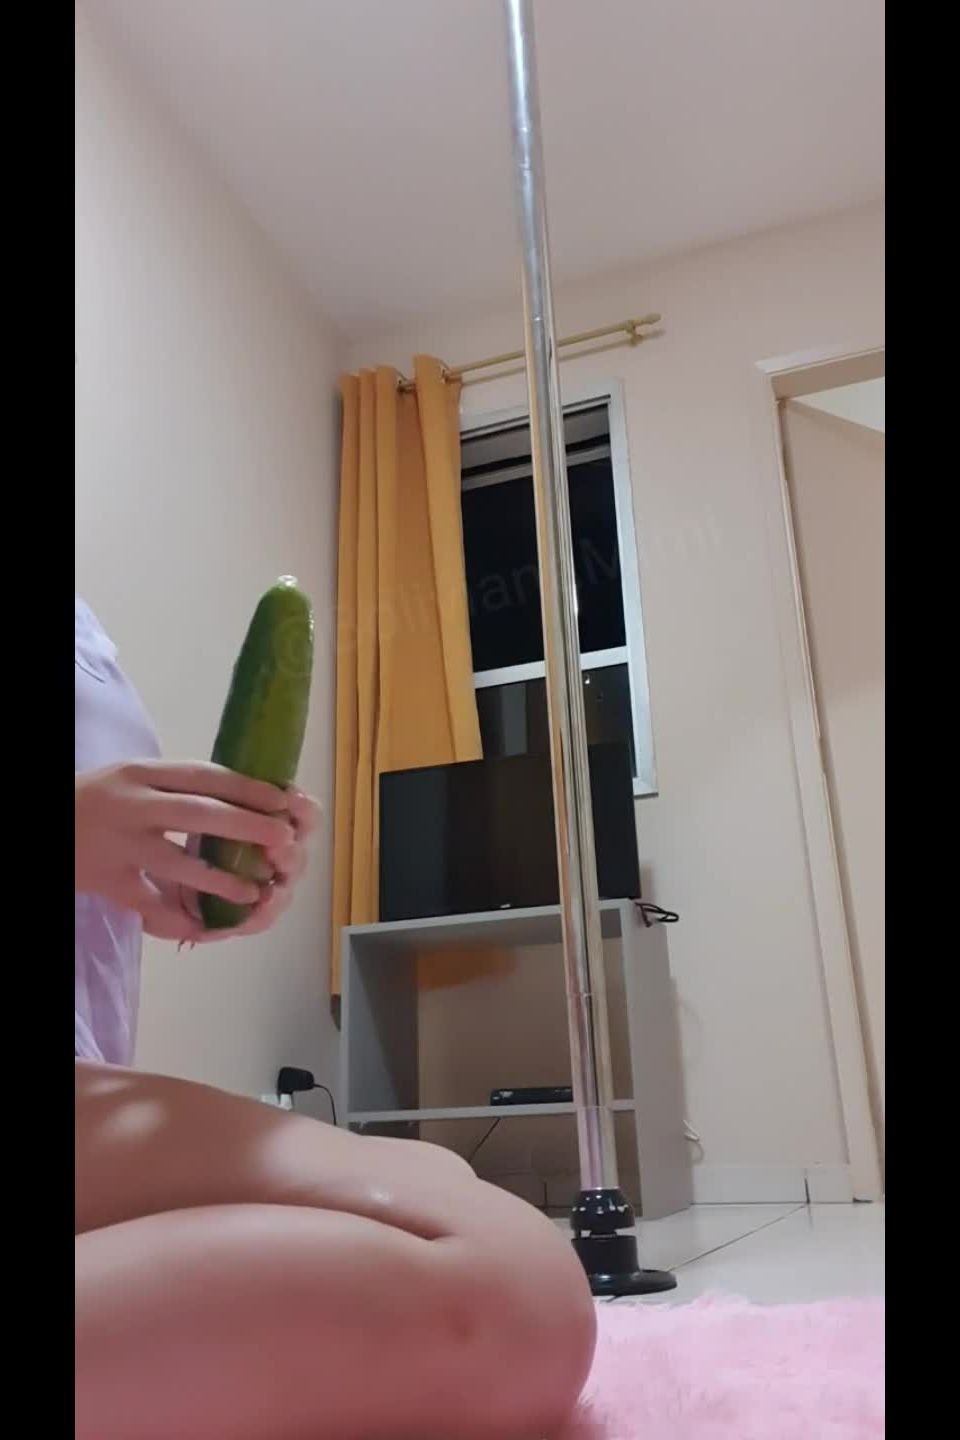 putting a cucumber in my ass